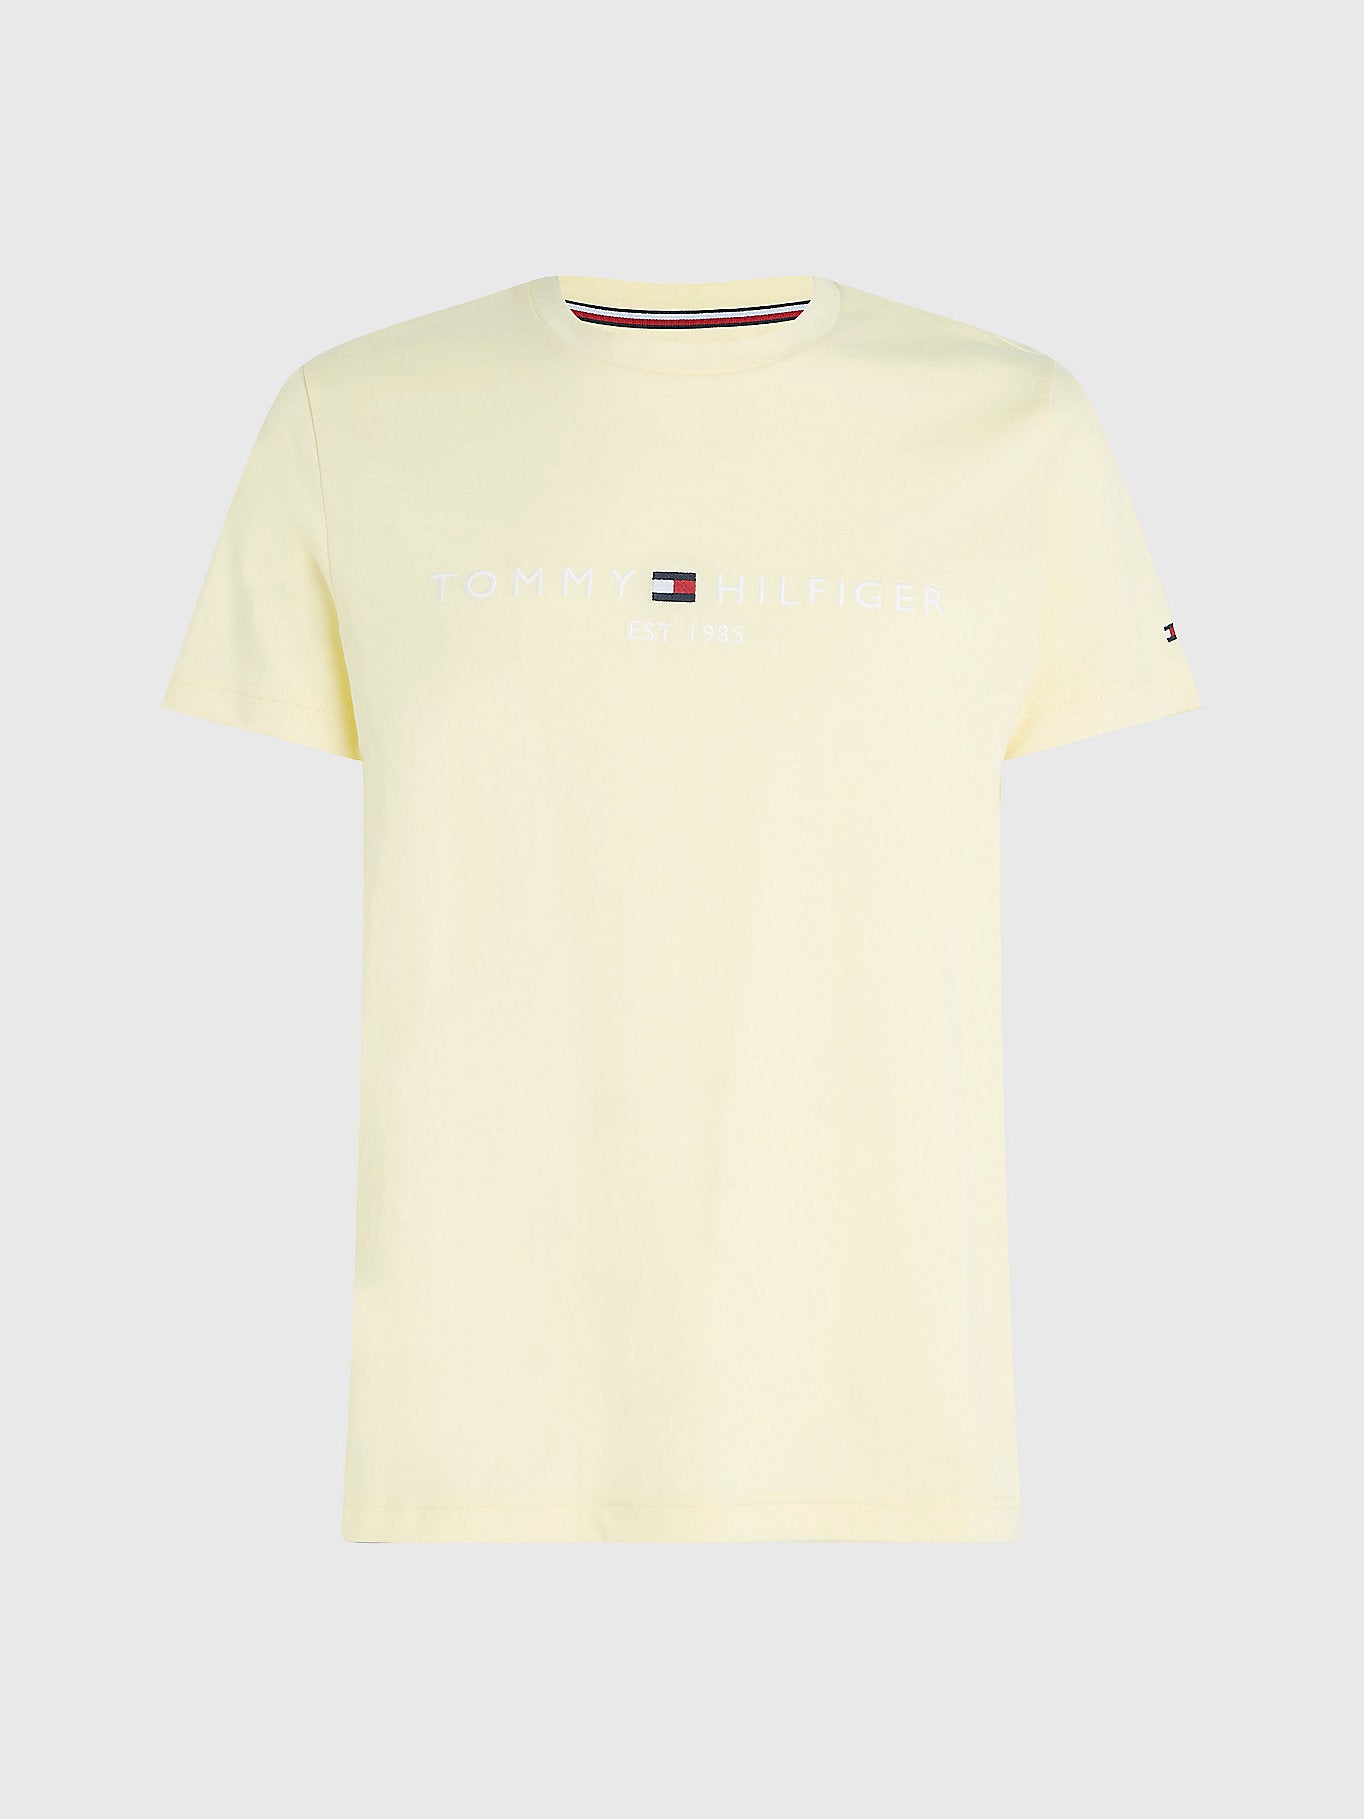 T-Shirt Tommy Hilfiger jaune clair coton bio pour homme I Georgespaul